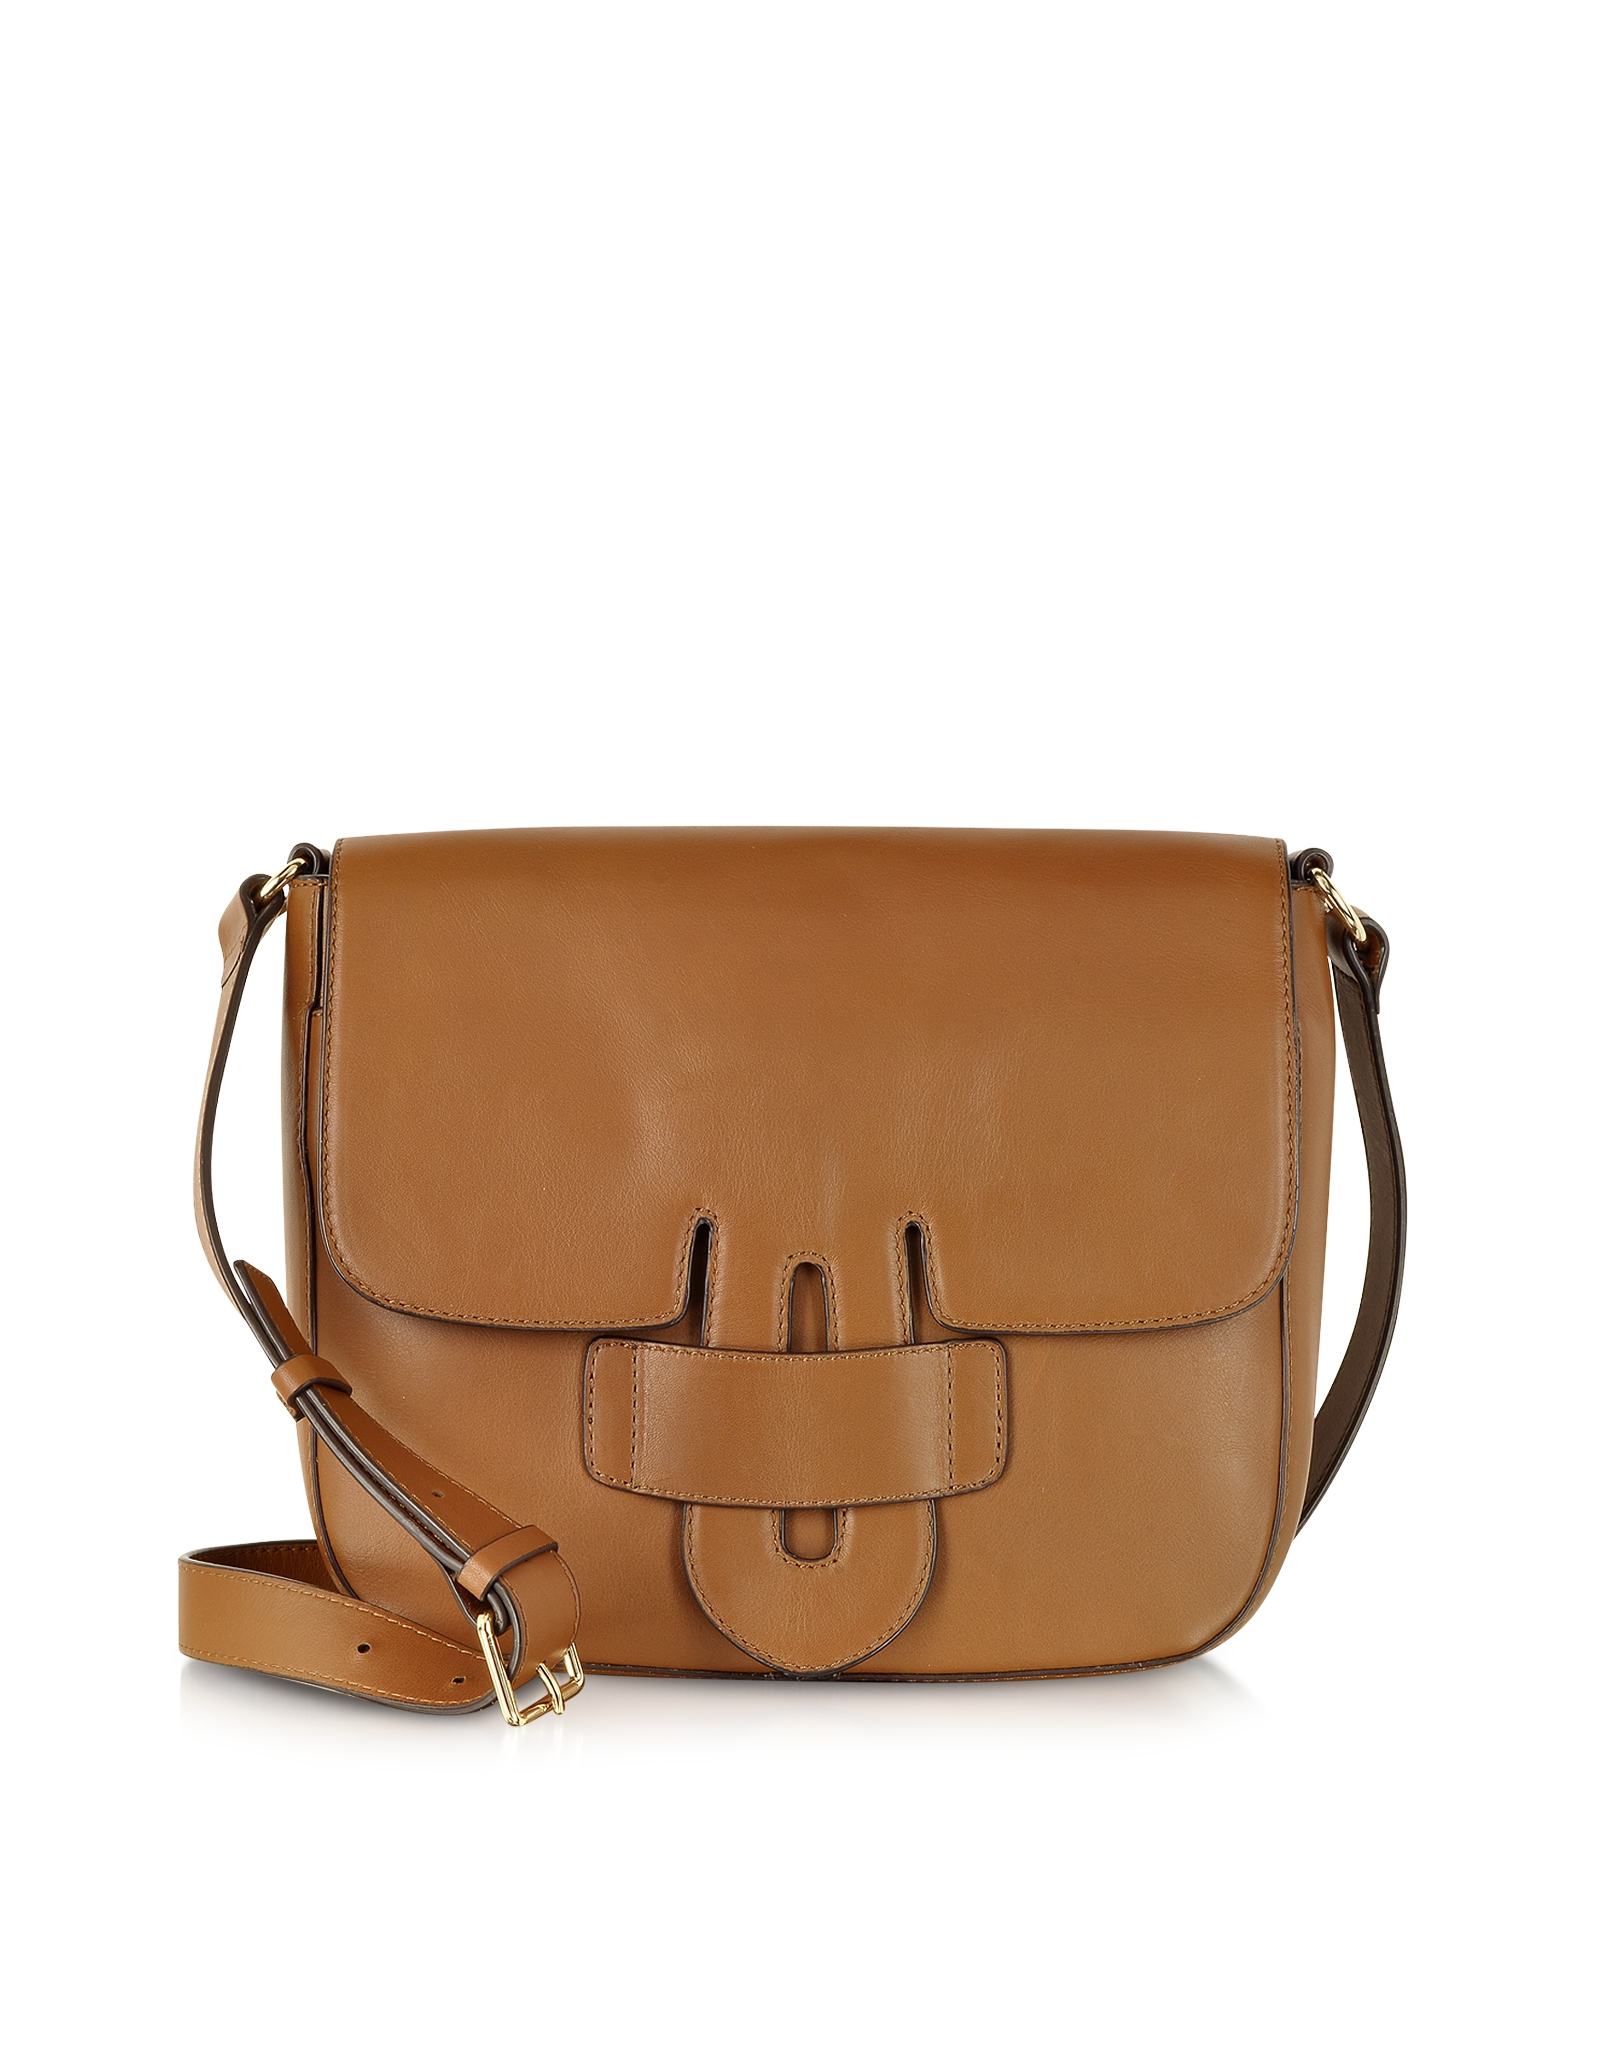 Tila march Zelig Brown Leather Shoulder Bag in Brown | Lyst